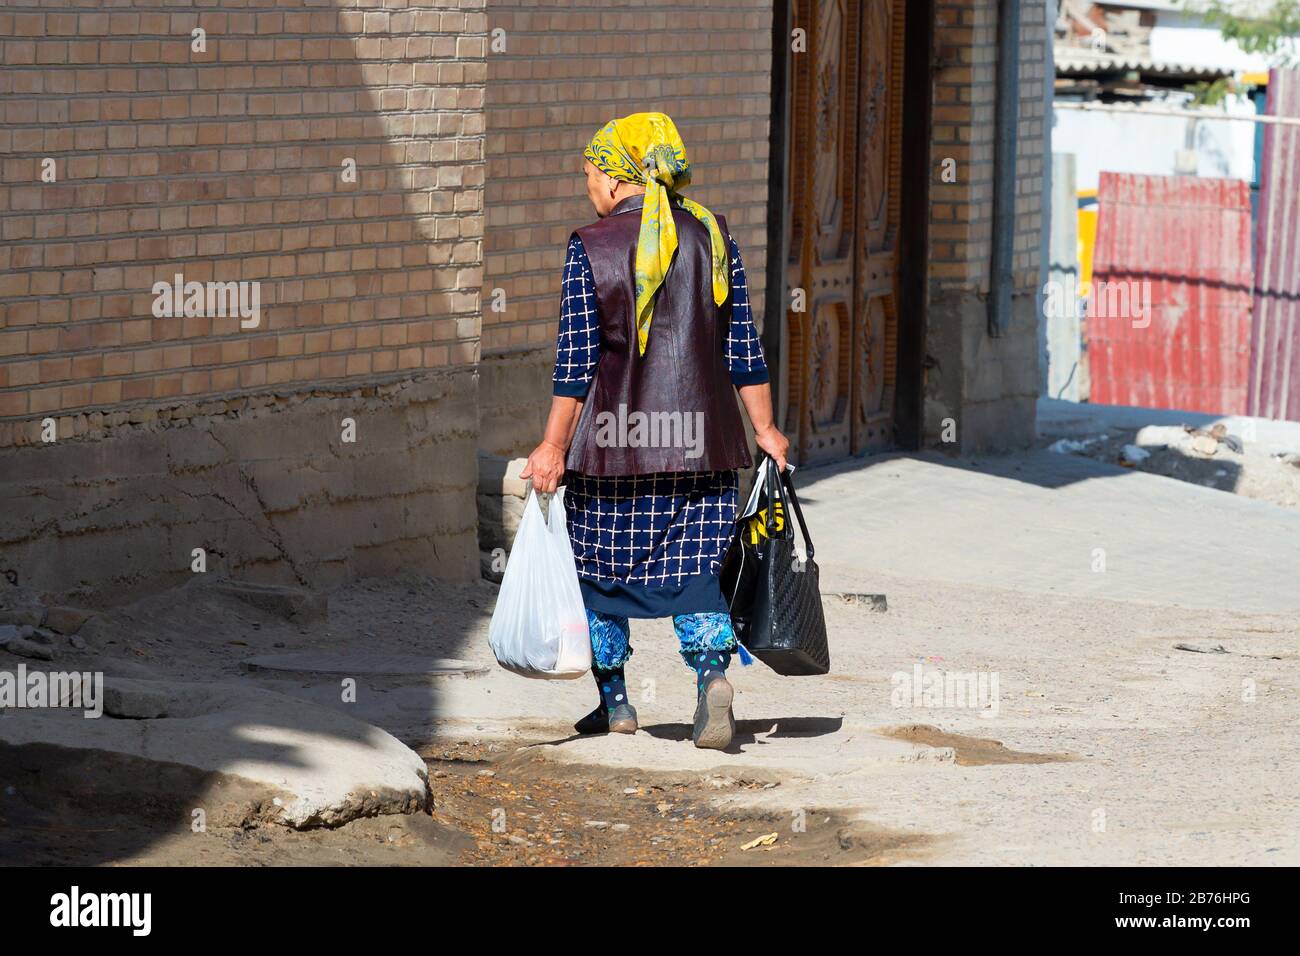 Die alte asiatin, die von hinten gesehen wurde, hält Taschen Handtasche und trägt traditionelle Kleidung mit Stempel und farbenfrohem Schal in Samarkand, Usbekistan. Stockfoto